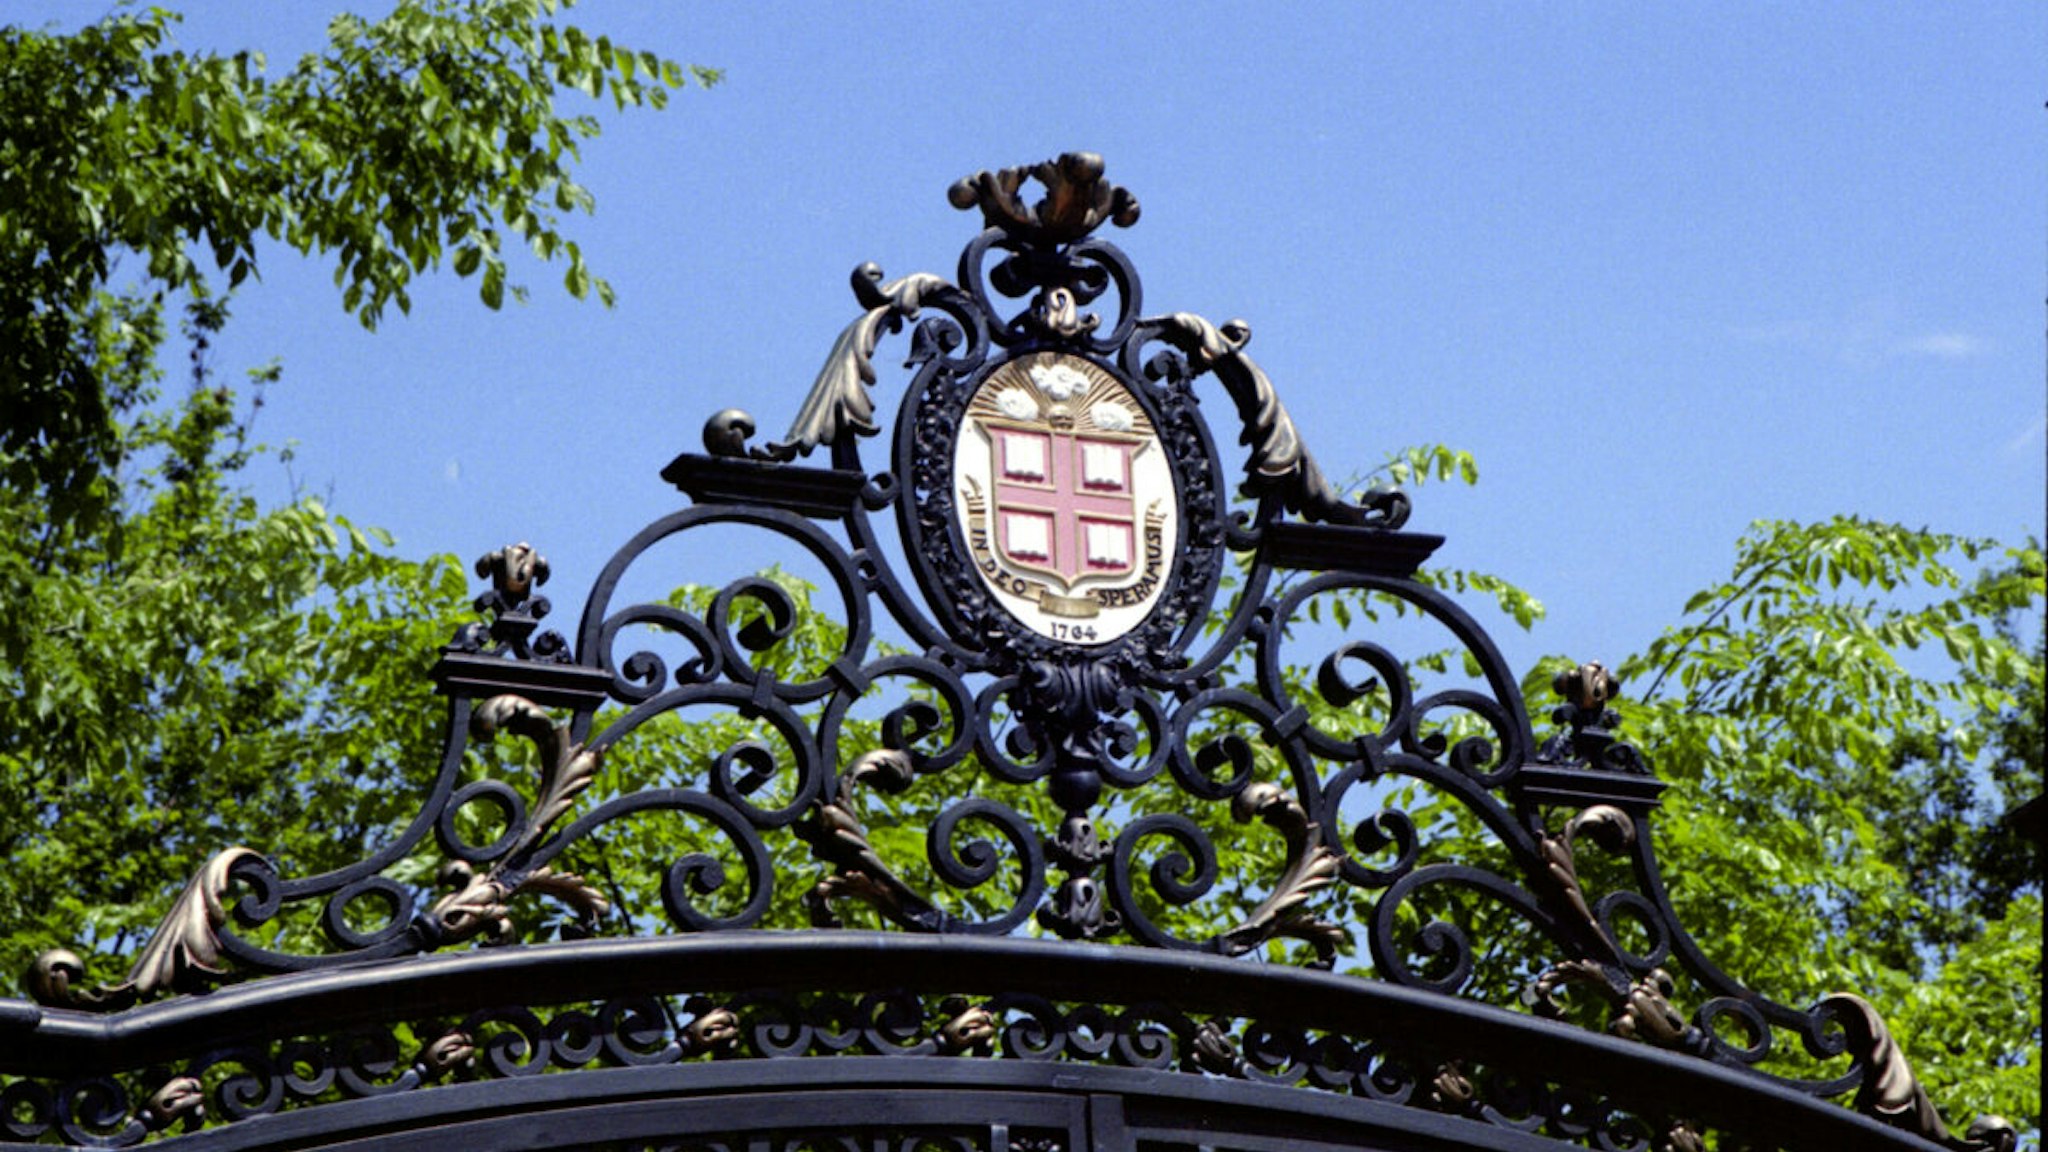 The Van Wickle Gates of Brown University (